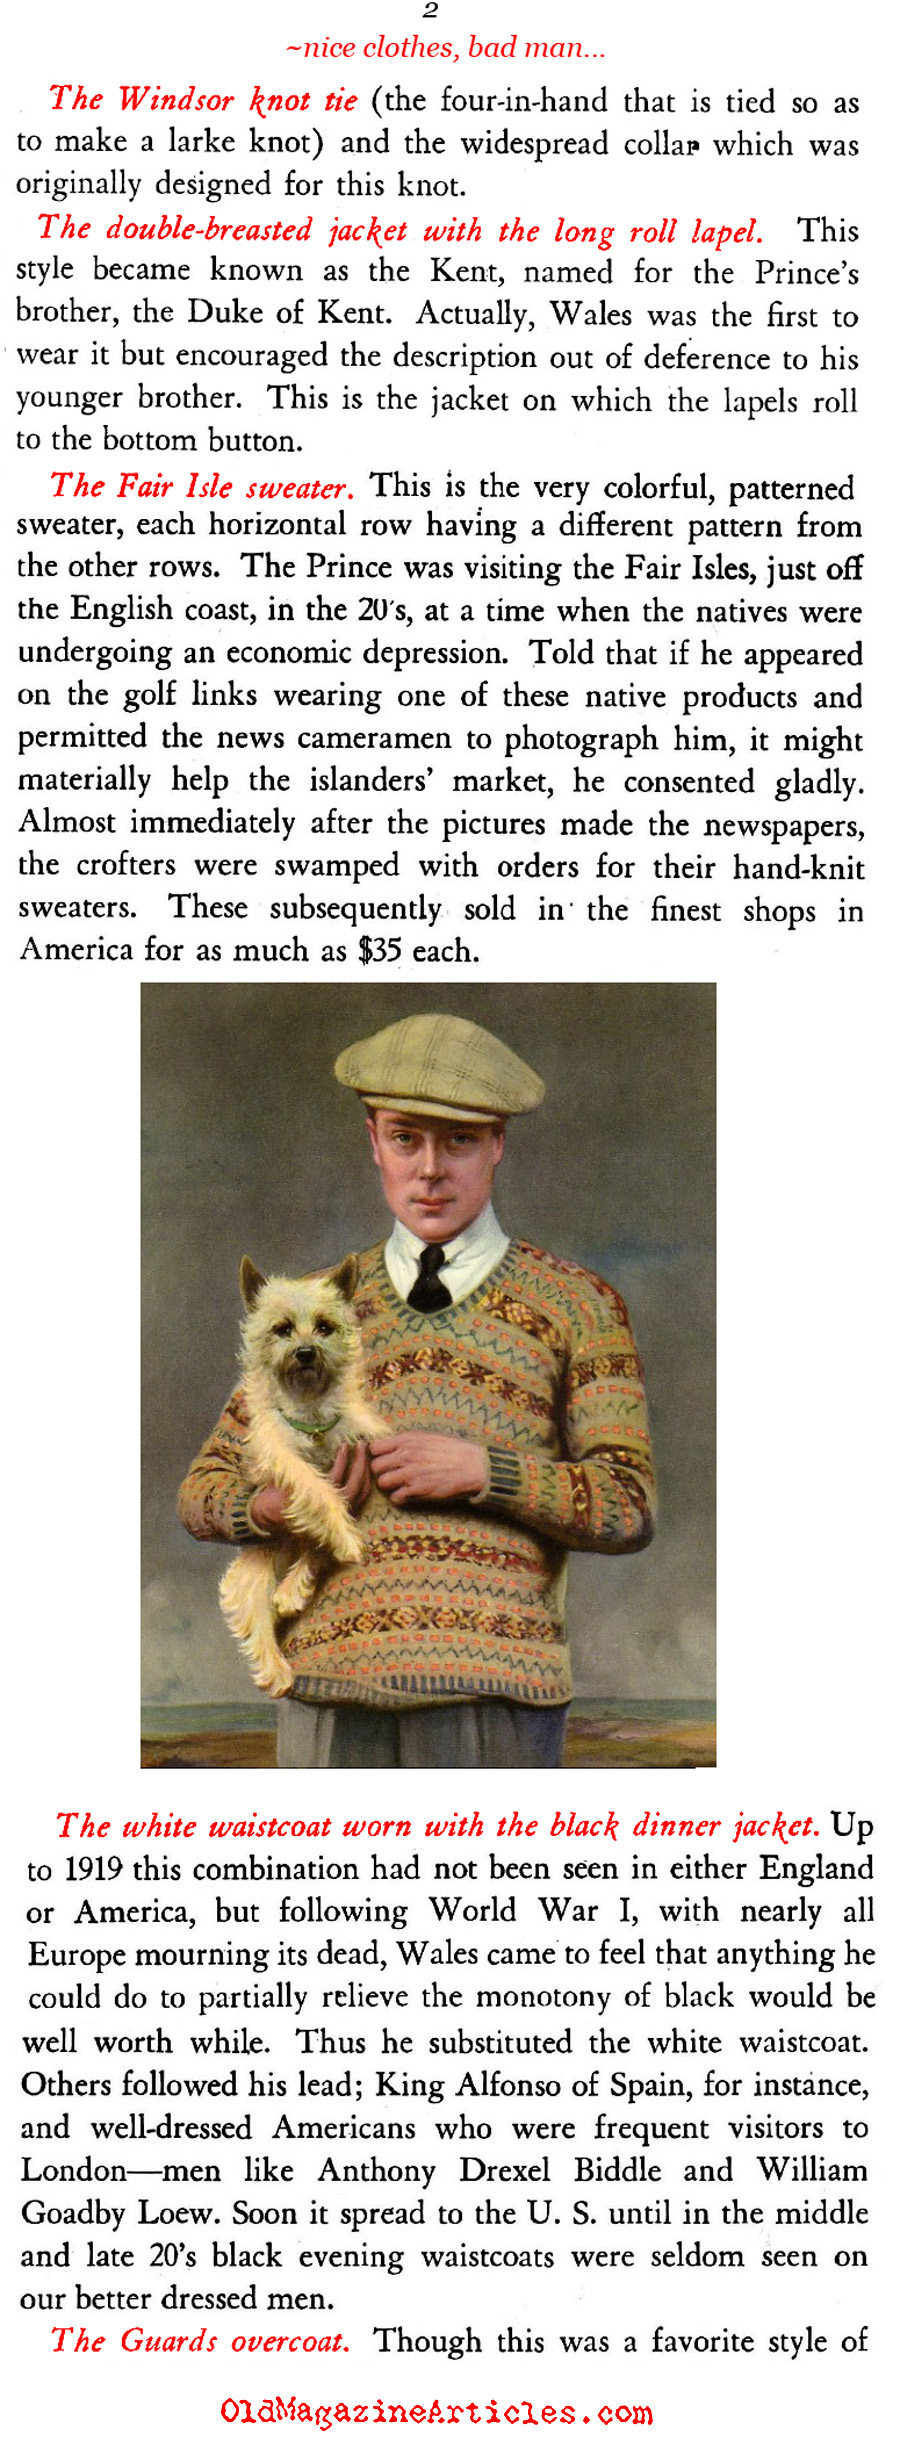 The Duke of Windsor Influences (Men's Wear, 1950)